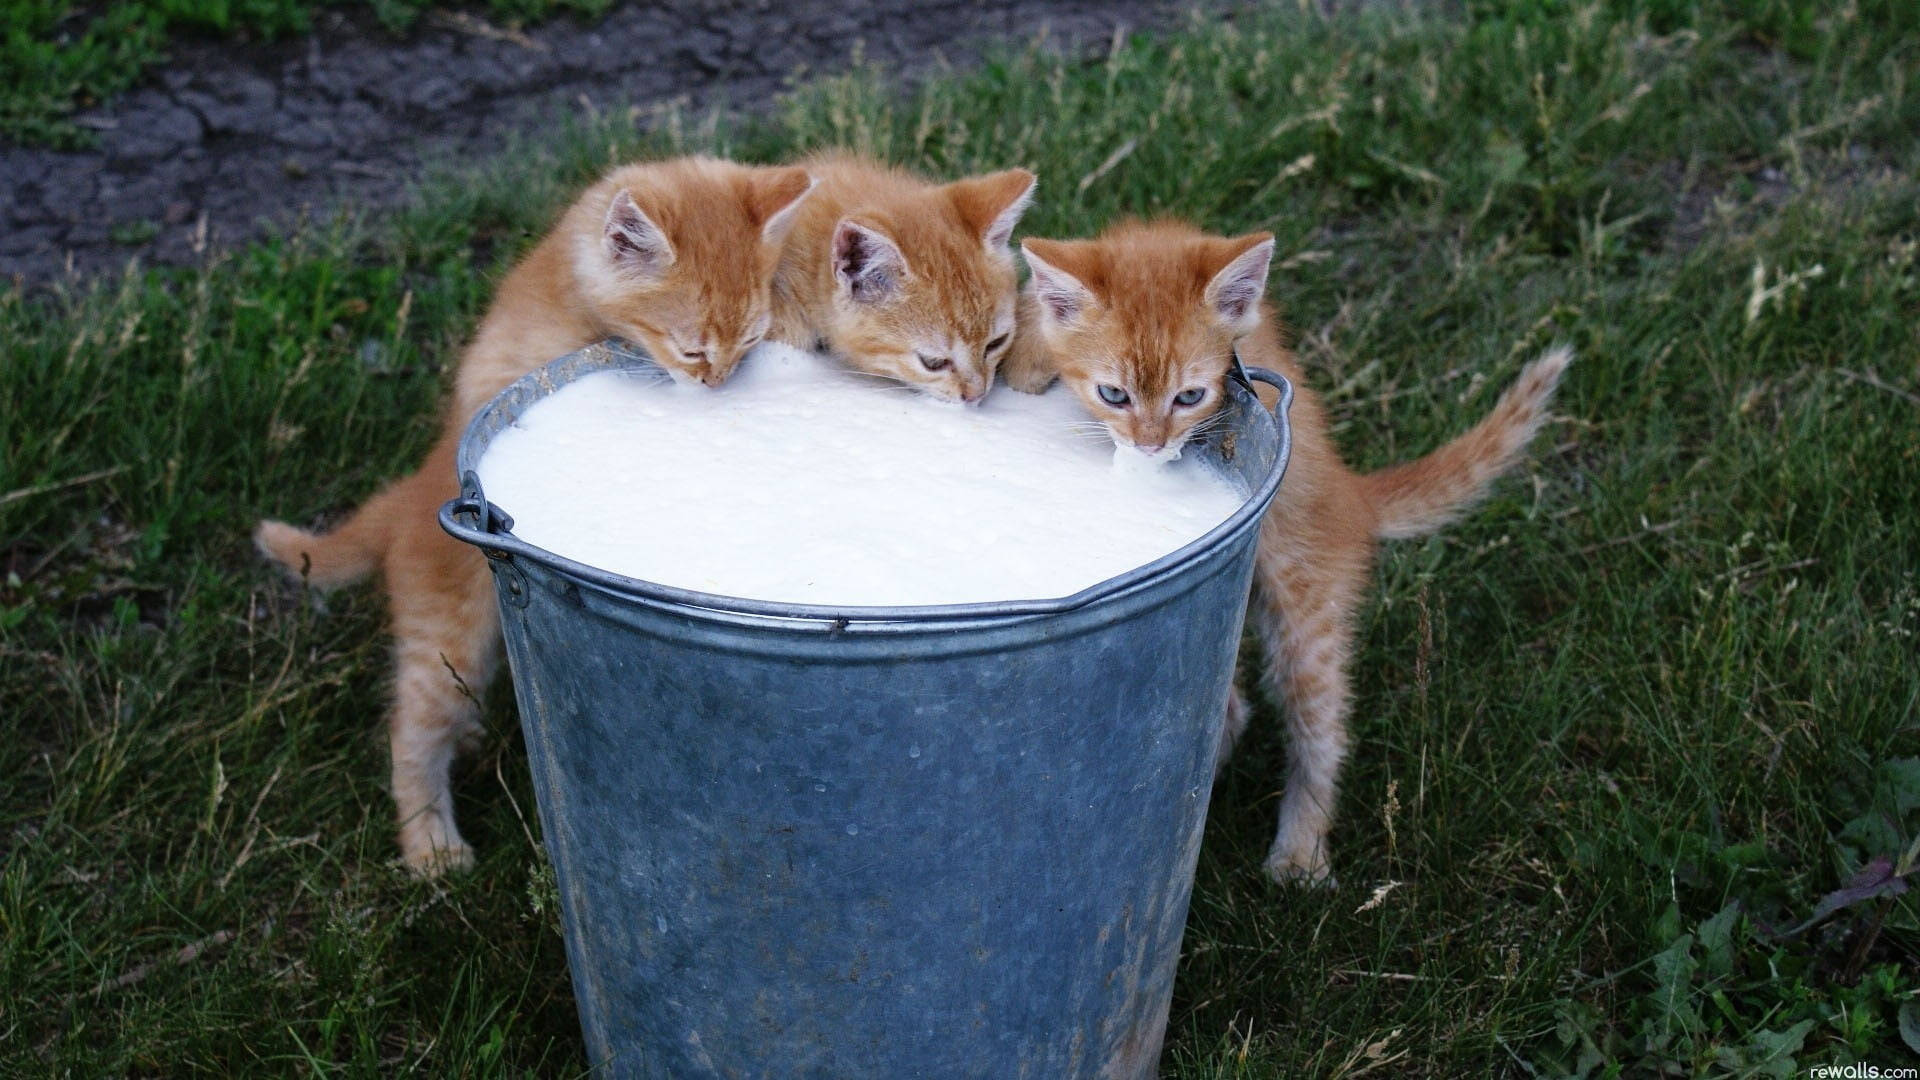 Kittens Drinking Milk From Bucket.jpg Wallpaper